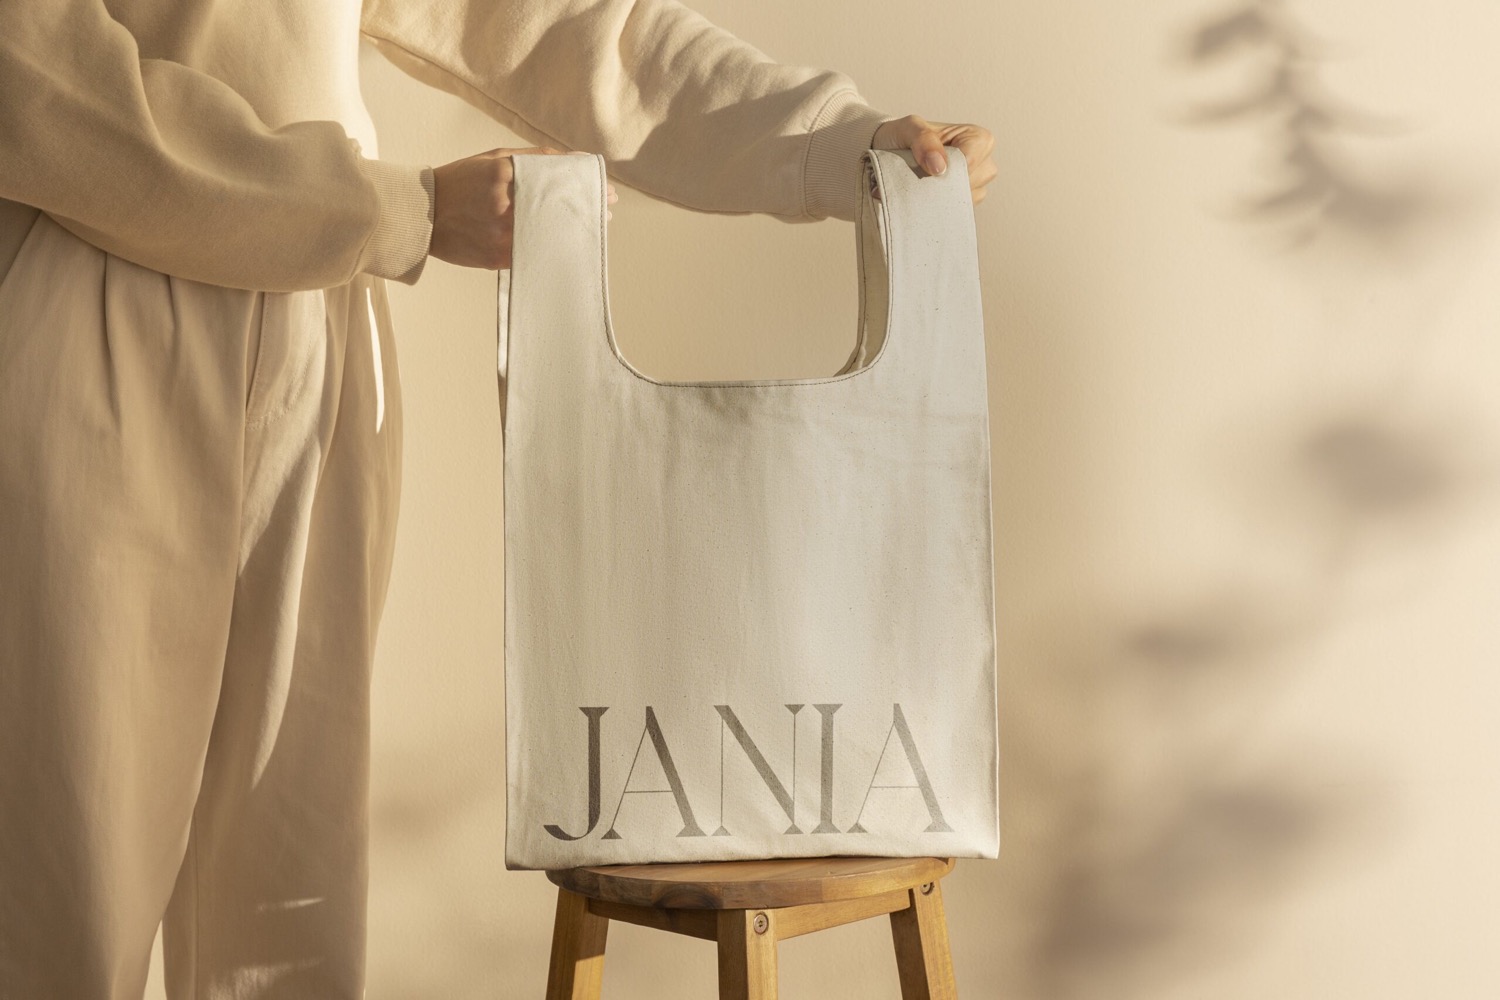 Jania护肤品牌视觉设计